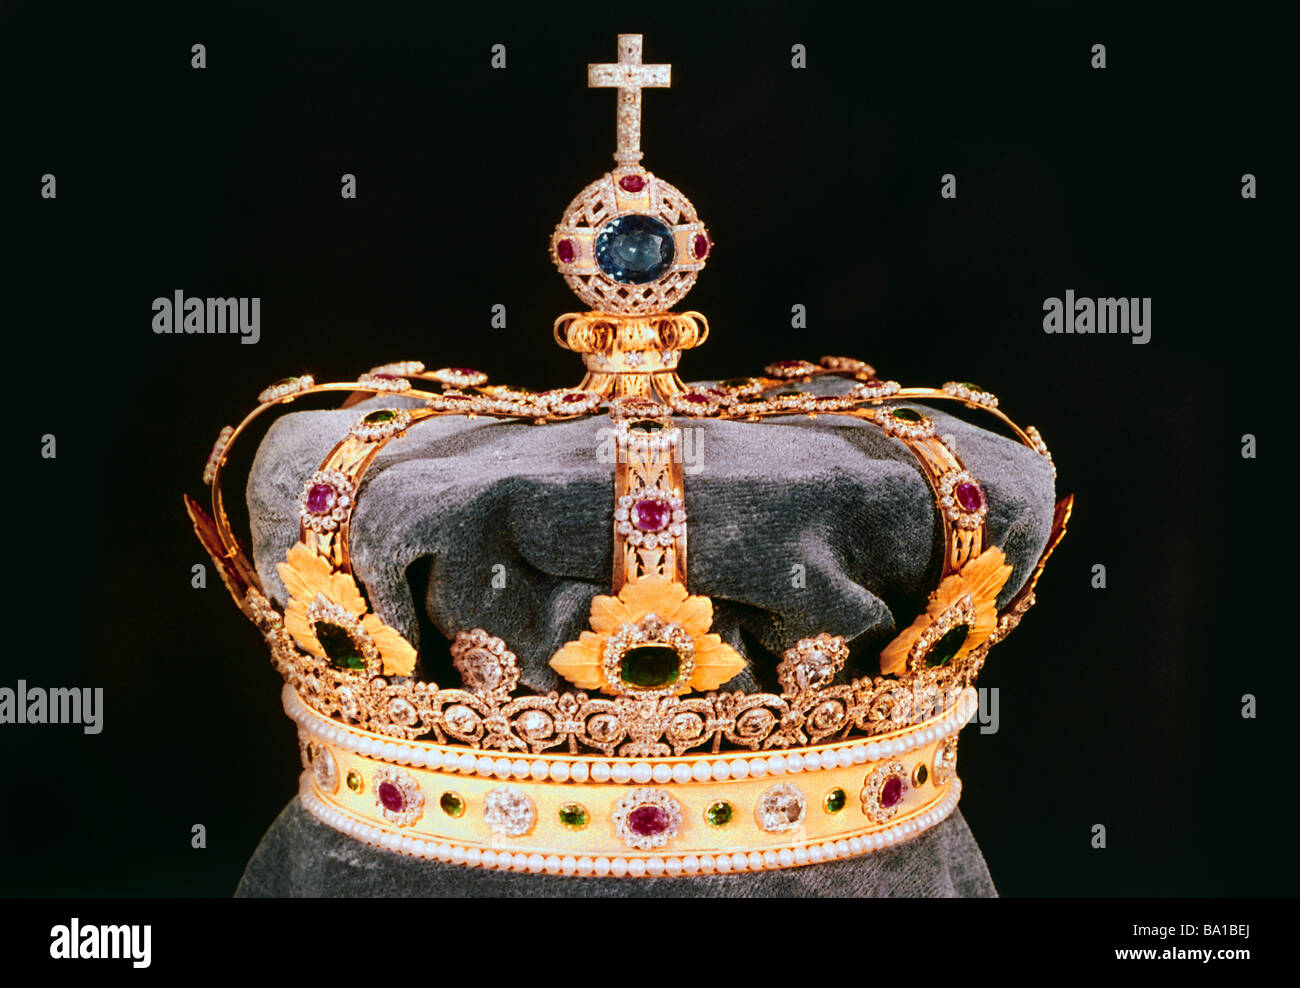 Gioielli, i gioielli della corona bavarese, Royal Crown, realizzata da Charles Percier e Jean Baptiste de Lasne, Parigi 1806/1807, Residenz, mu Foto Stock